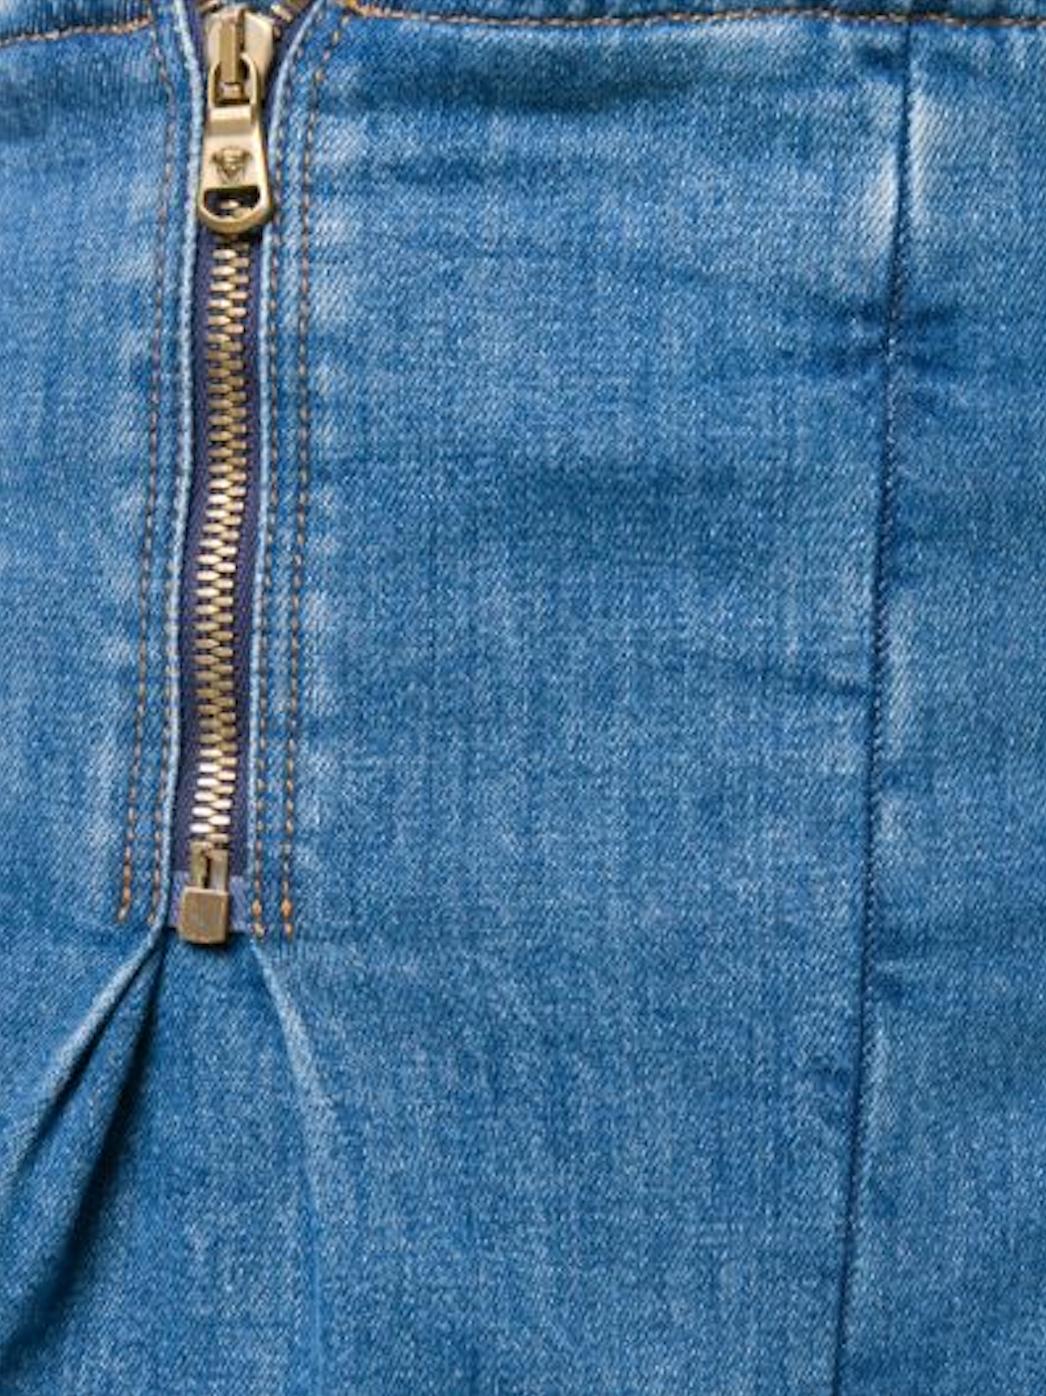 Women's Versace Light Blue Denim Zip-Up High Waisted Jean Shorts Size 27